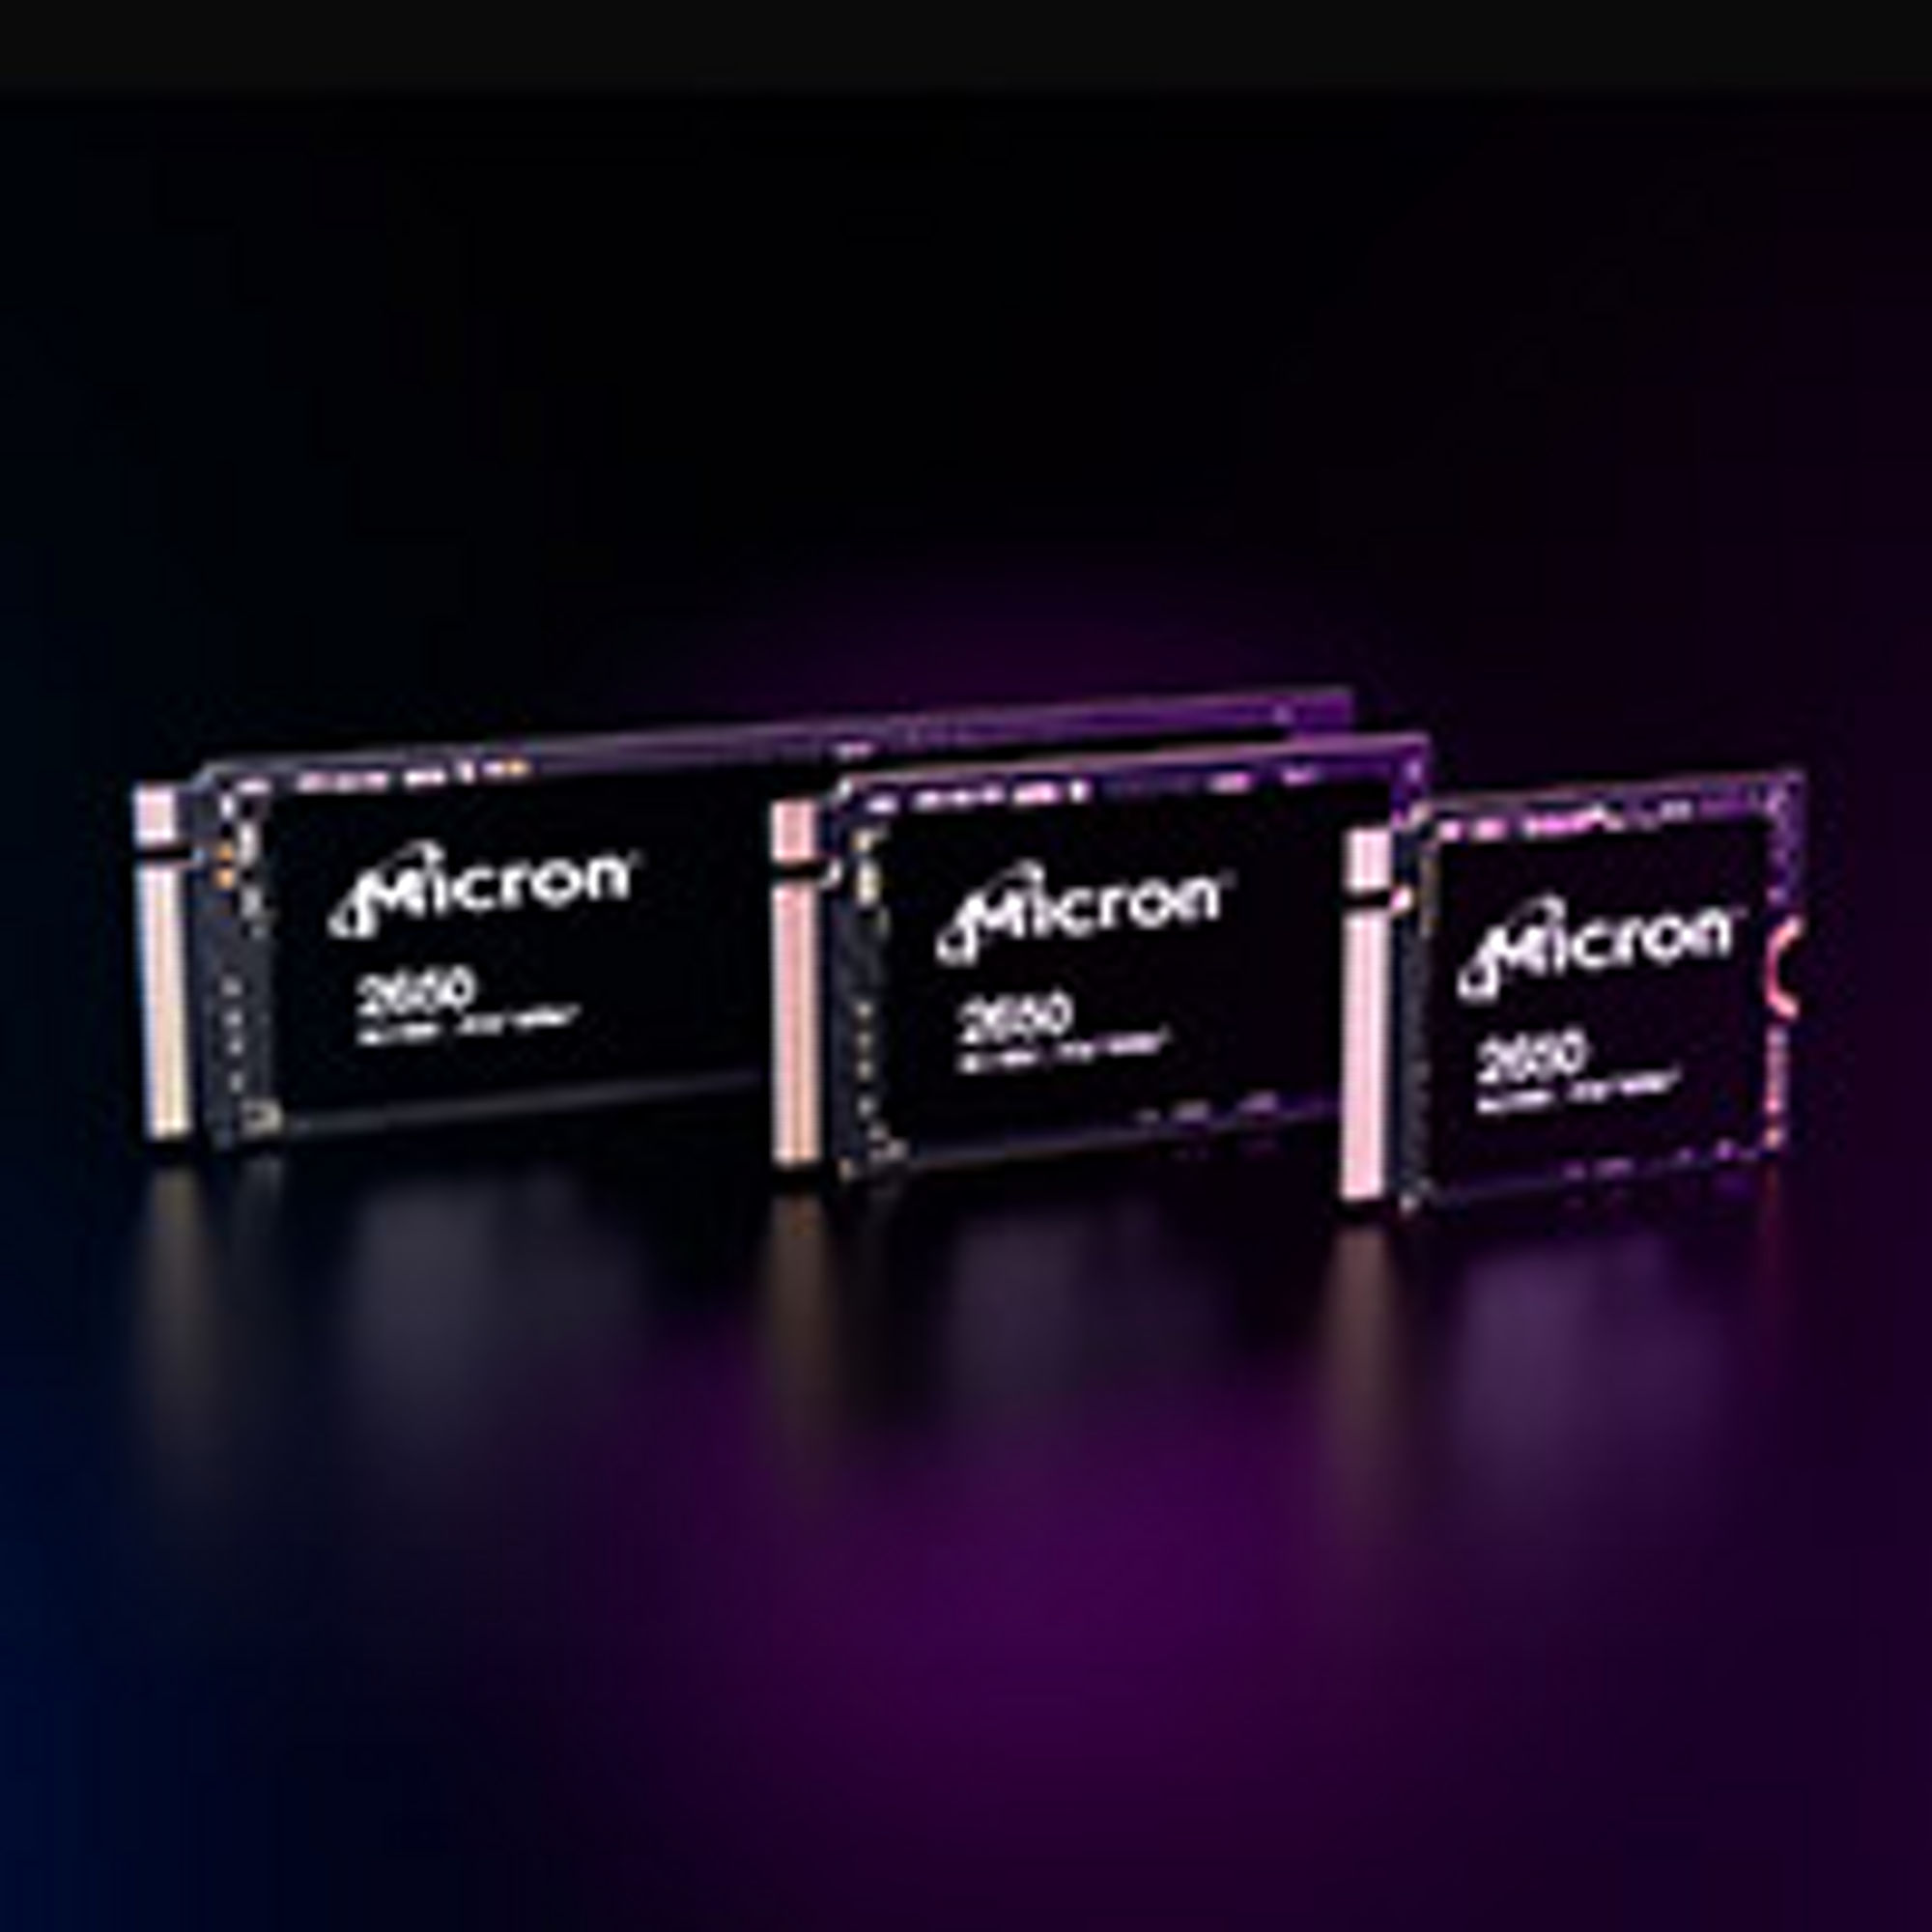 Micron 2650 SSD